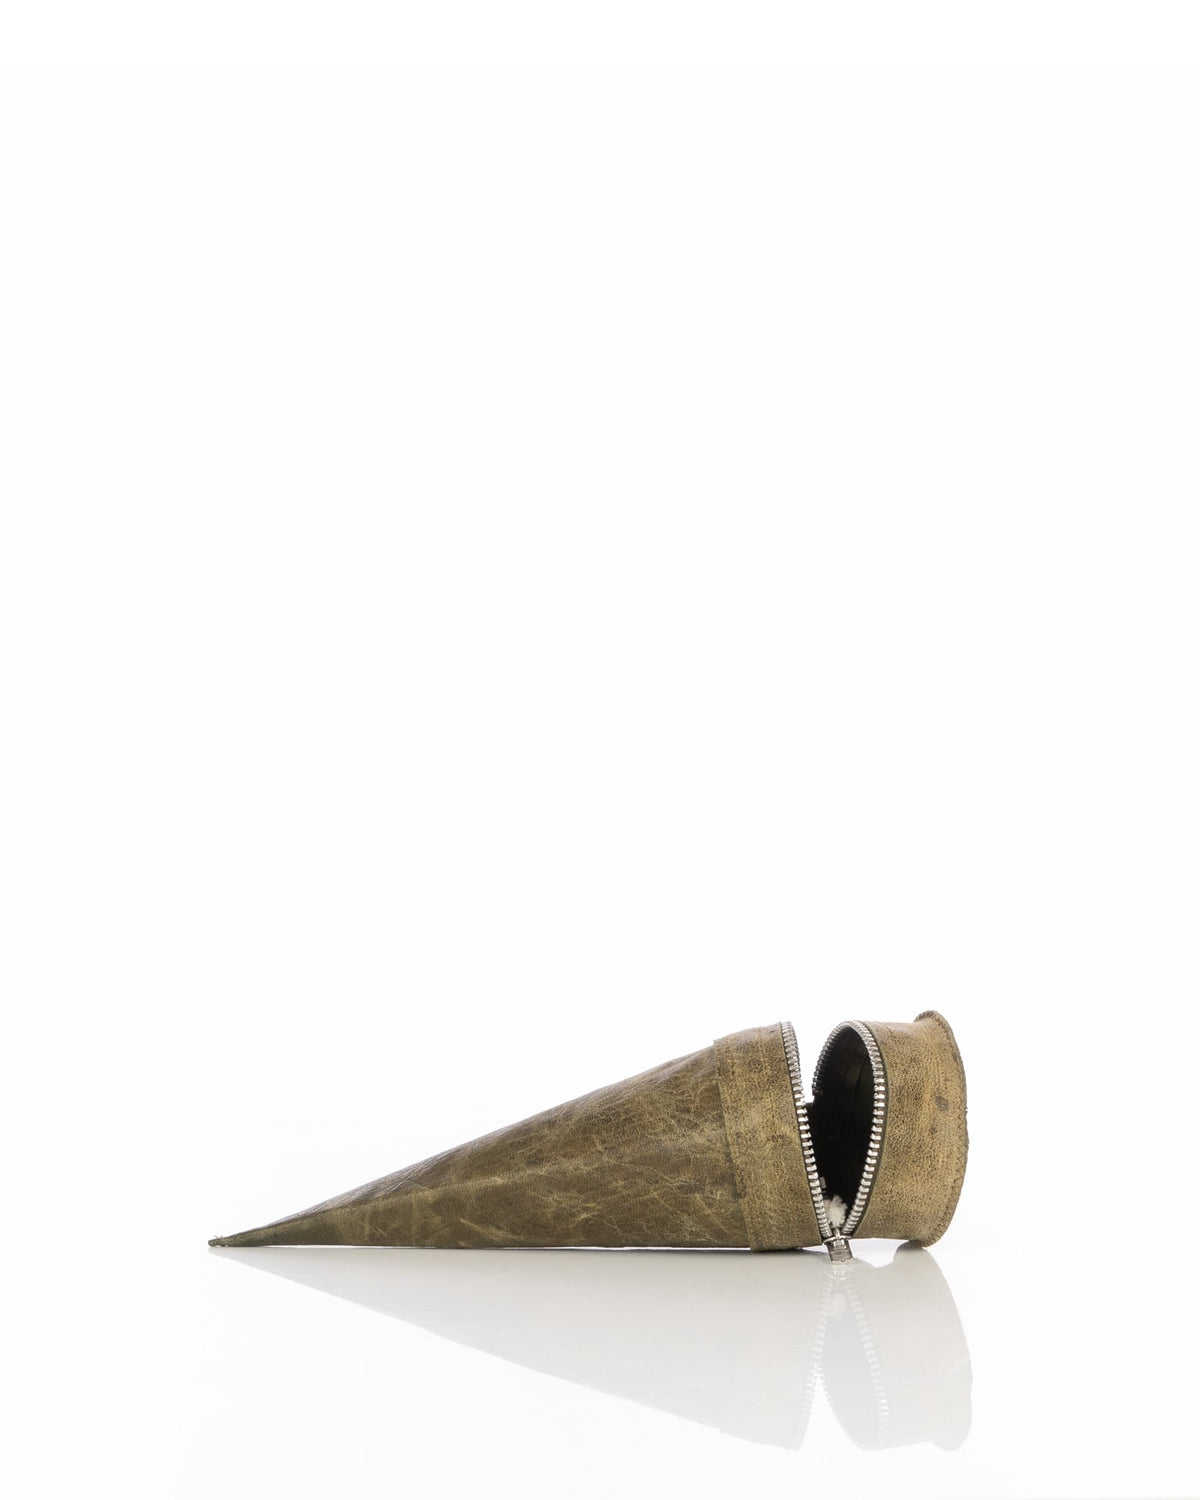 Saddermander | Cone Bag Necklace Olive - Concrete